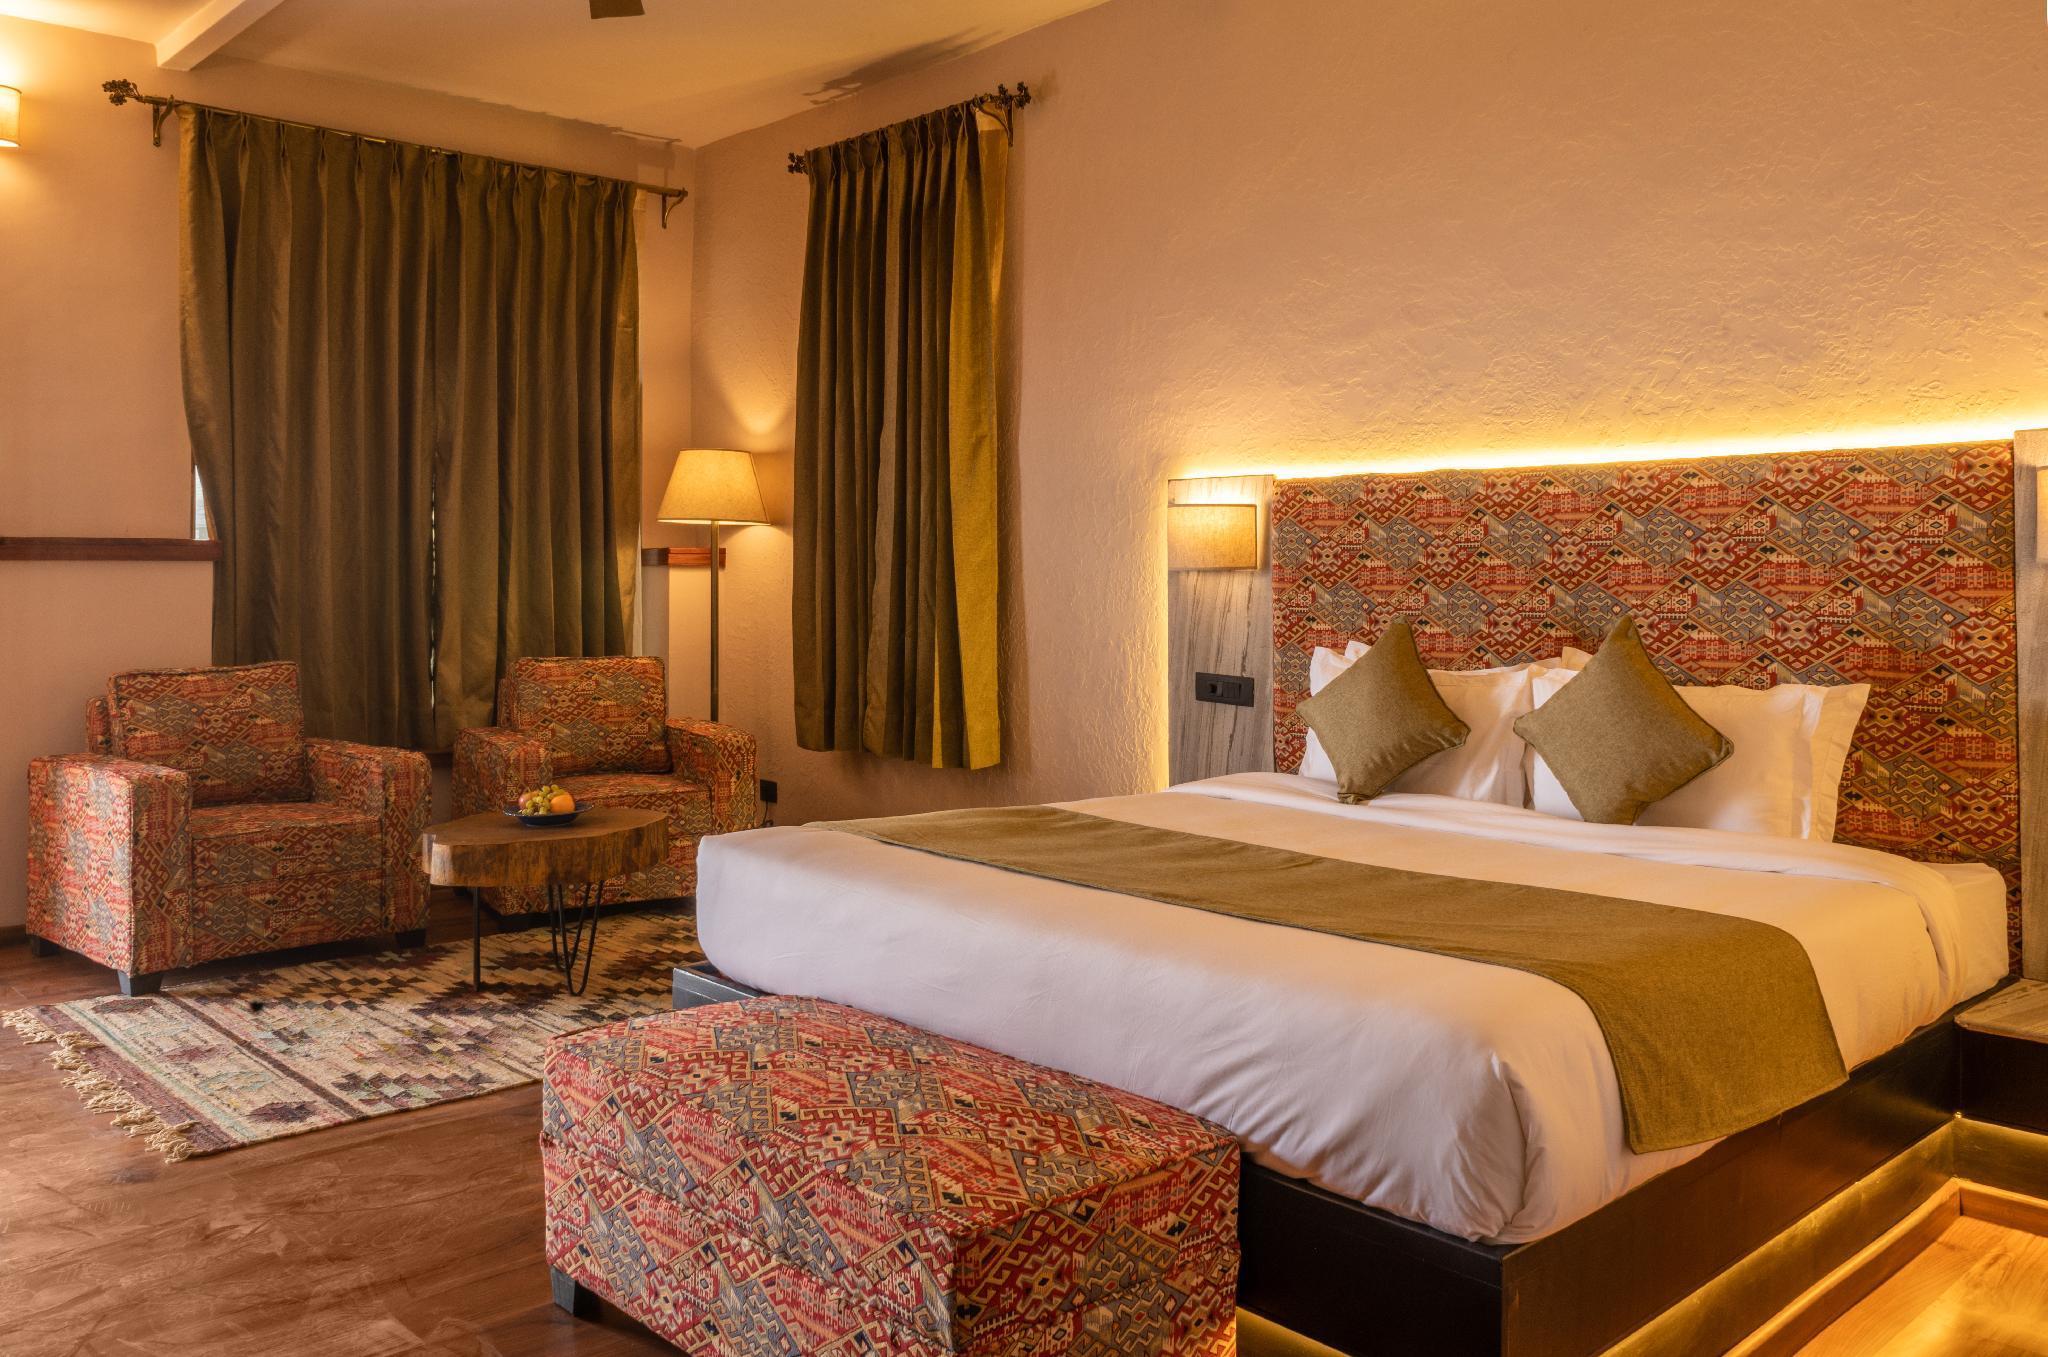 Dharamshala Hotel Vacation Rentals - Himachal Pradesh, India | Airbnb